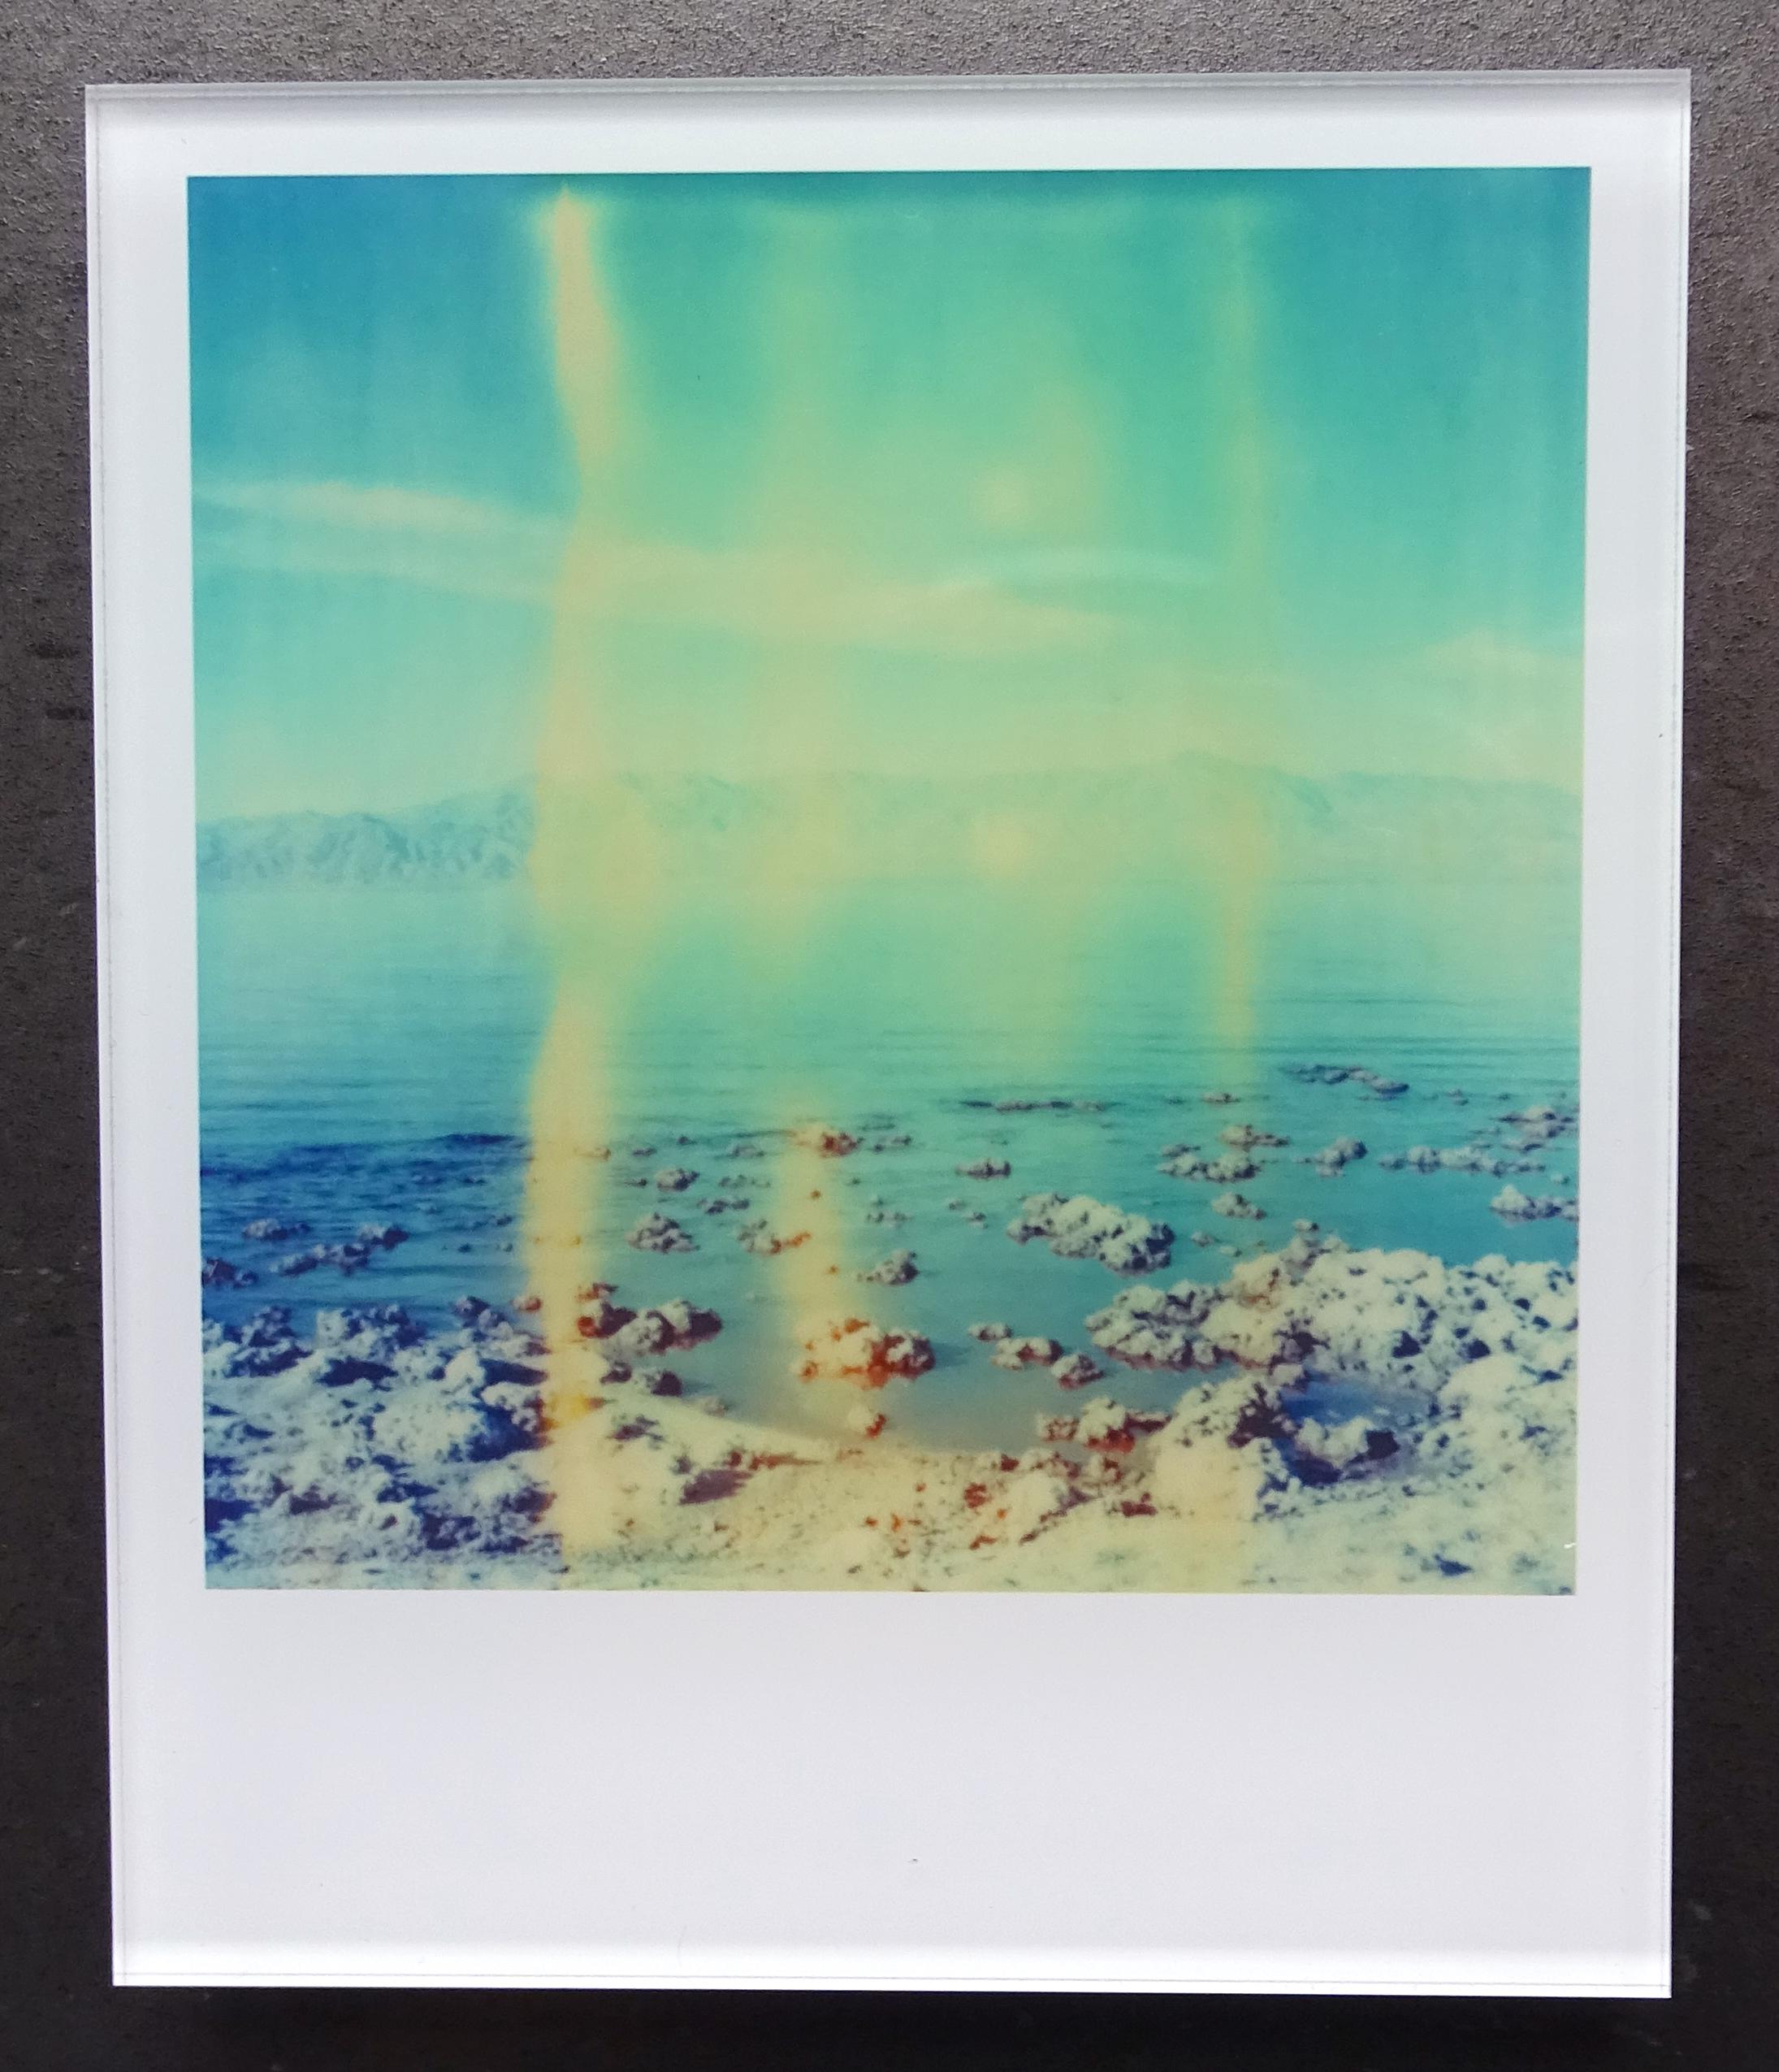 Die Minis von Stefanie Schneider
Salt'n Sea (Kalifornische Badlands) - 2010

Verso signiert und Signaturmarke.
Digitale Lambda-Farbfotografien auf Basis der Polaroid.
Eingeklemmt zwischen Plexiglas (Dicke 0,7 cm)

Offene Editionen in Polaroidgröße